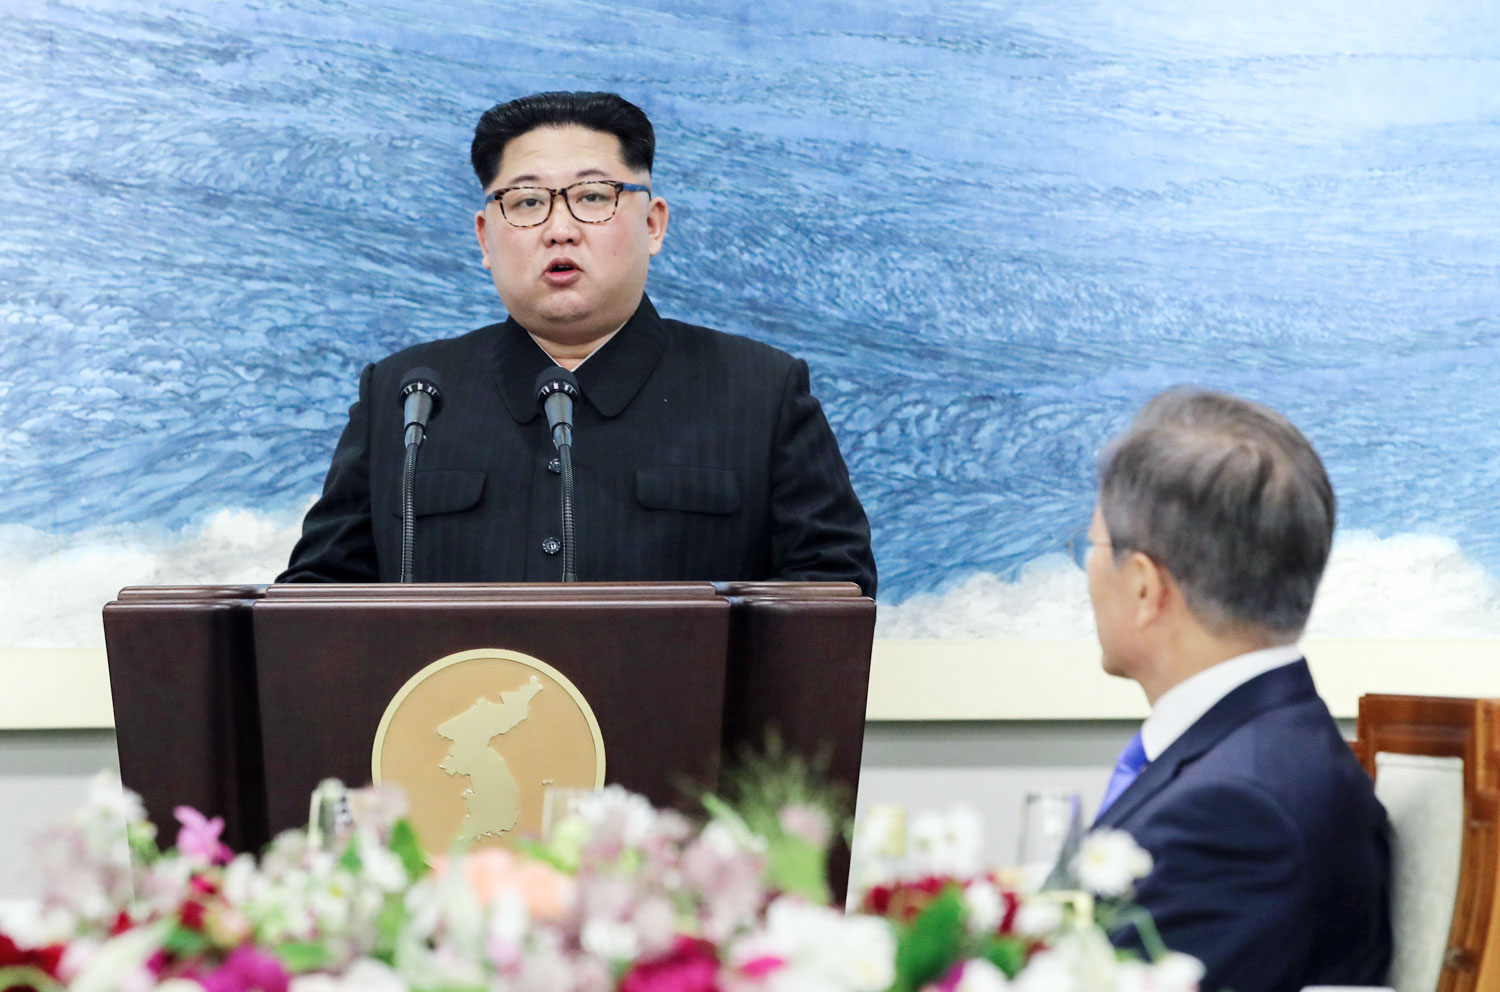 Для очков лидер Северной Кореи&nbsp;выбирает&nbsp;прямоугольную оправу под черепаховый панцирь